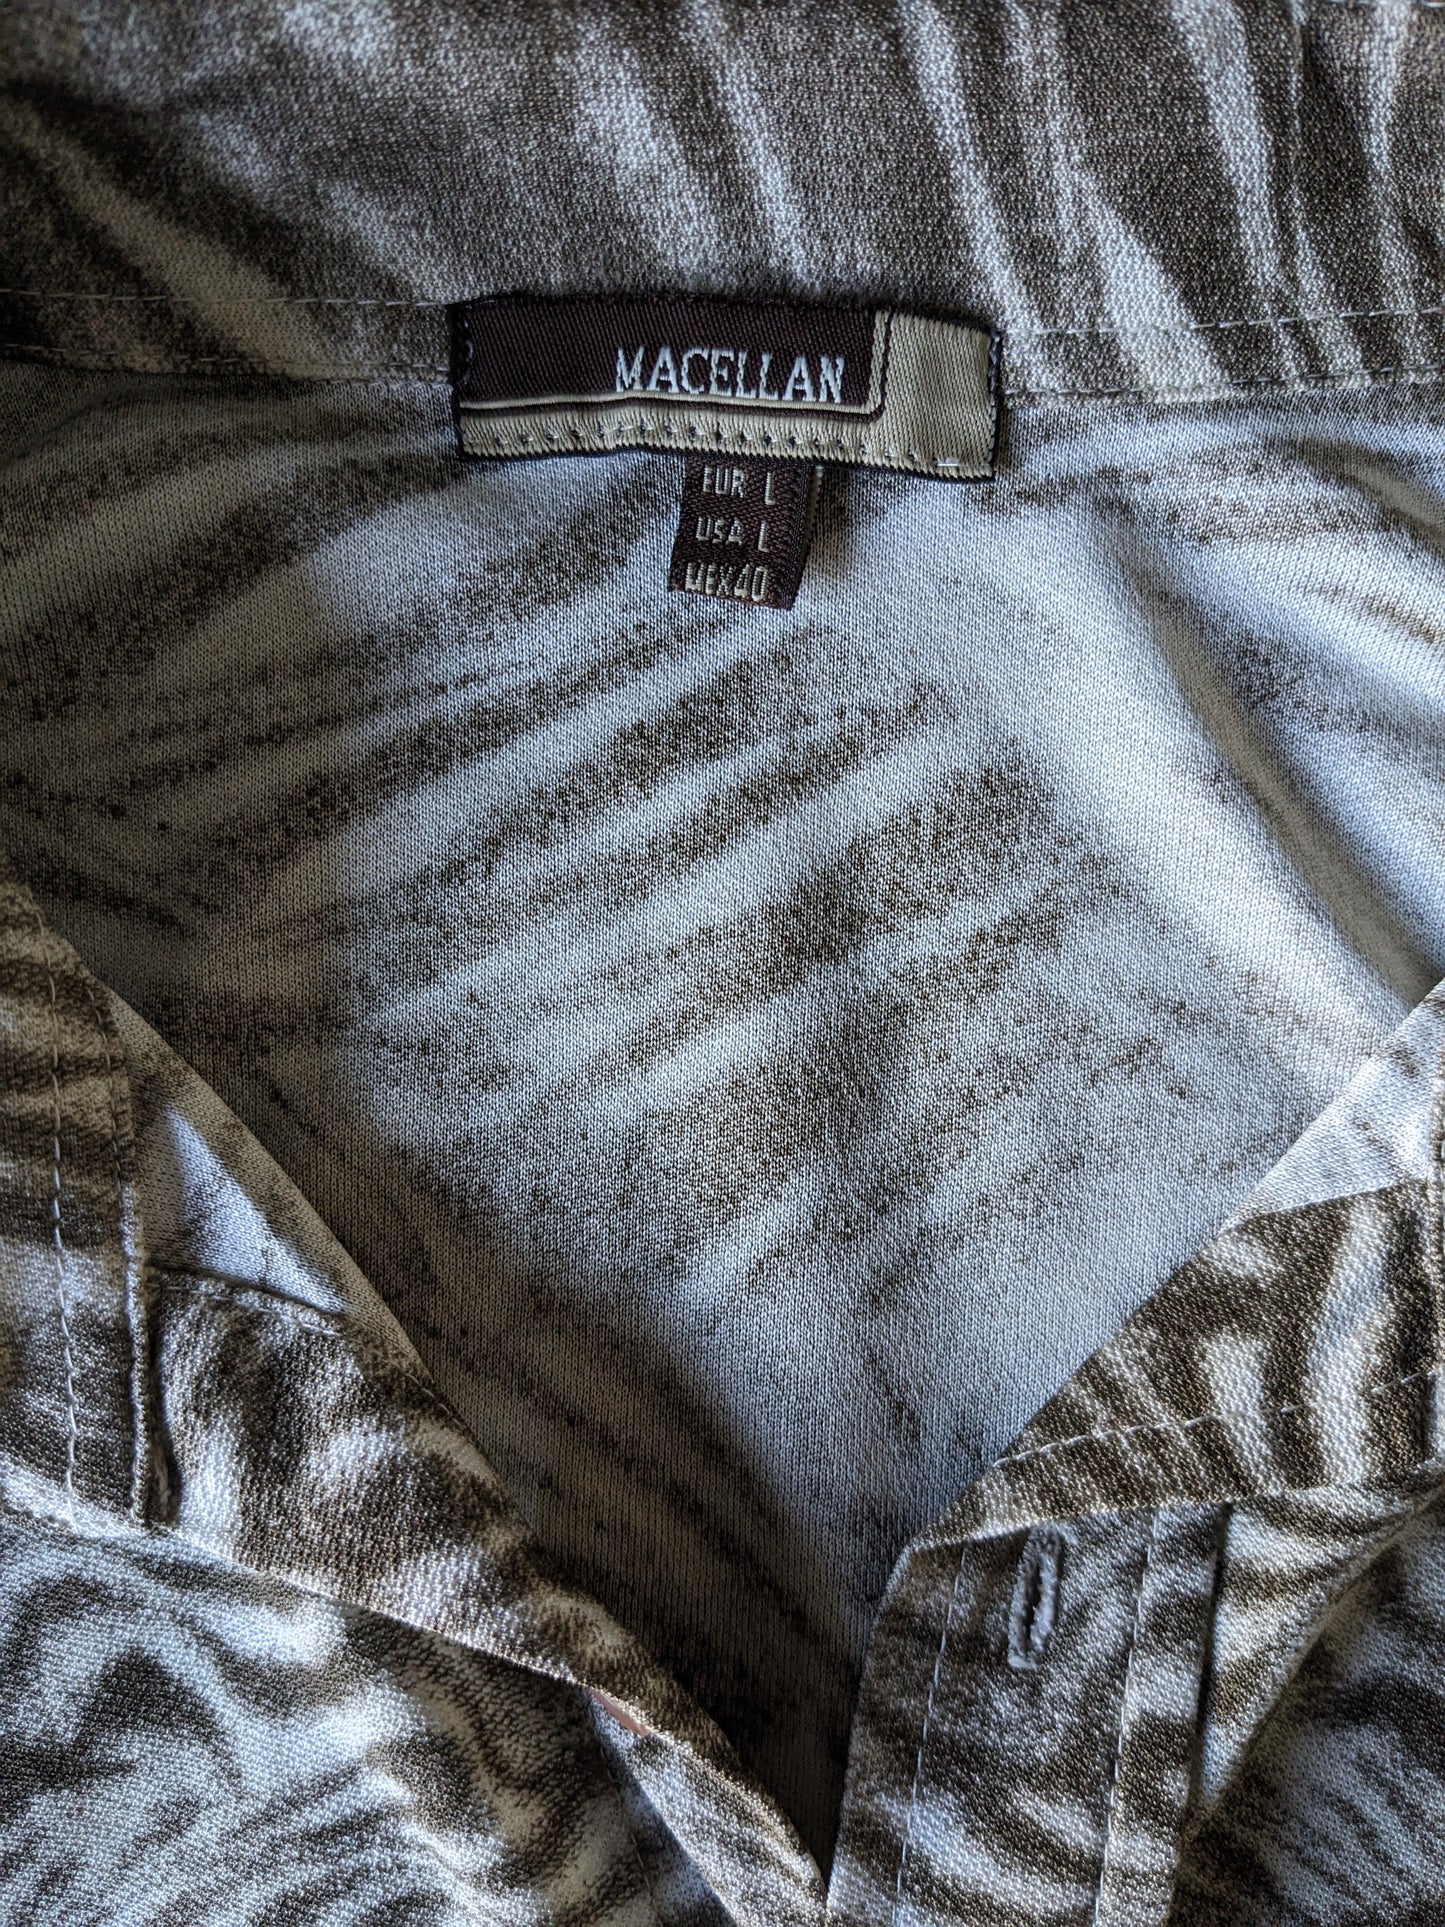 Sleeve corta di camicia Marcellana vintage. BEIGE Brown Print. Taglia L. Allungamento.